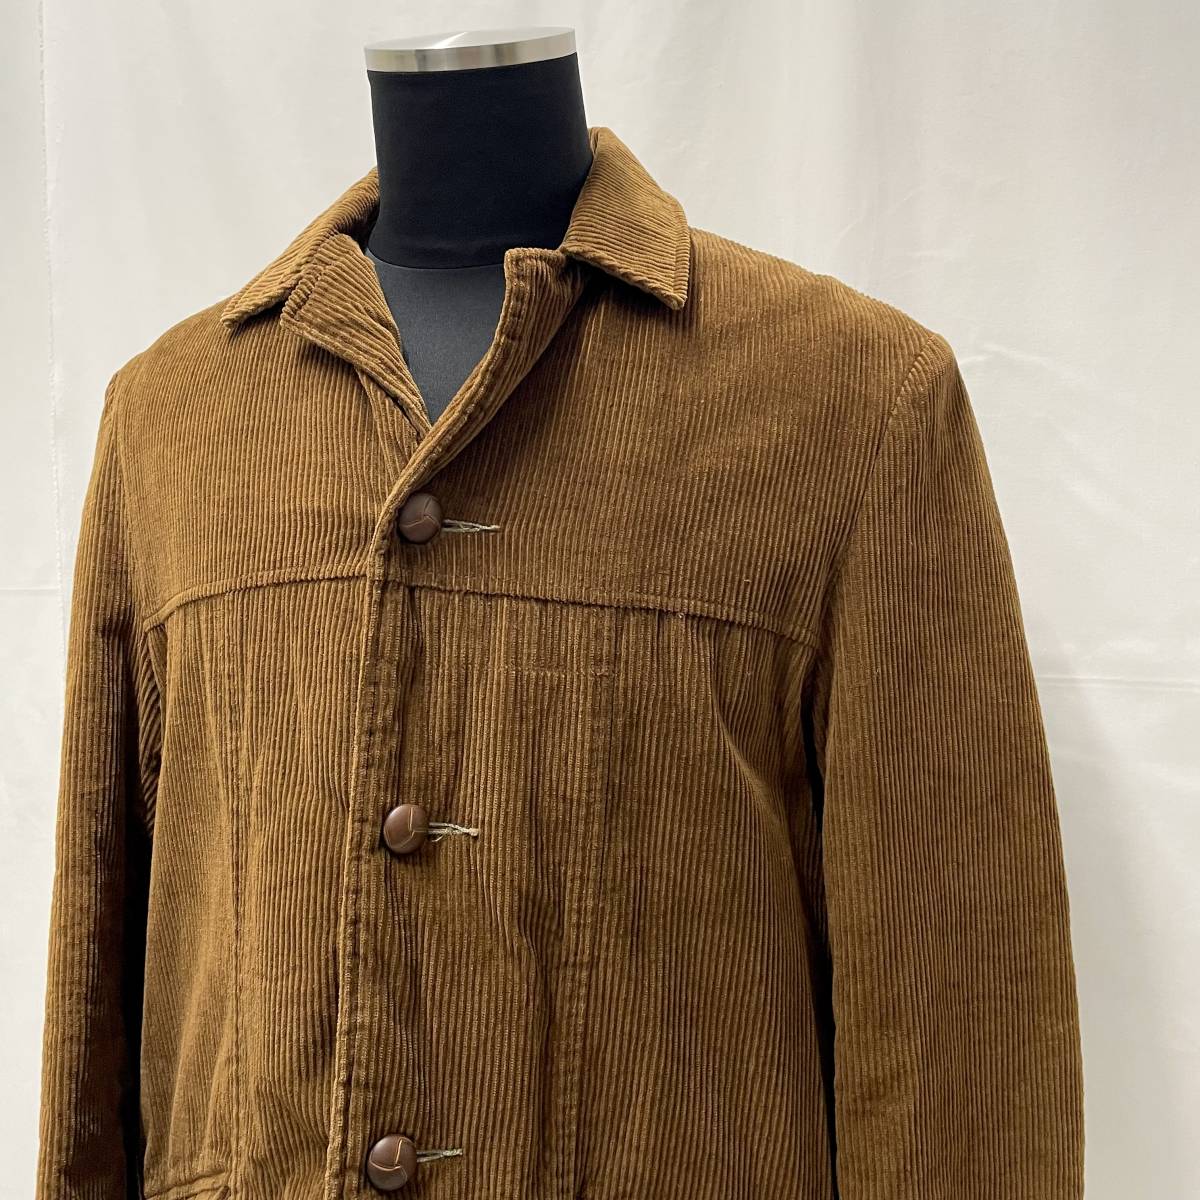 古着 60s Fingerhut コーデュロイ カバーオール 42サイズ USA製 太畝 中綿 キルティング ジャケット 60年代 ヴィンテージ キャメル 茶色